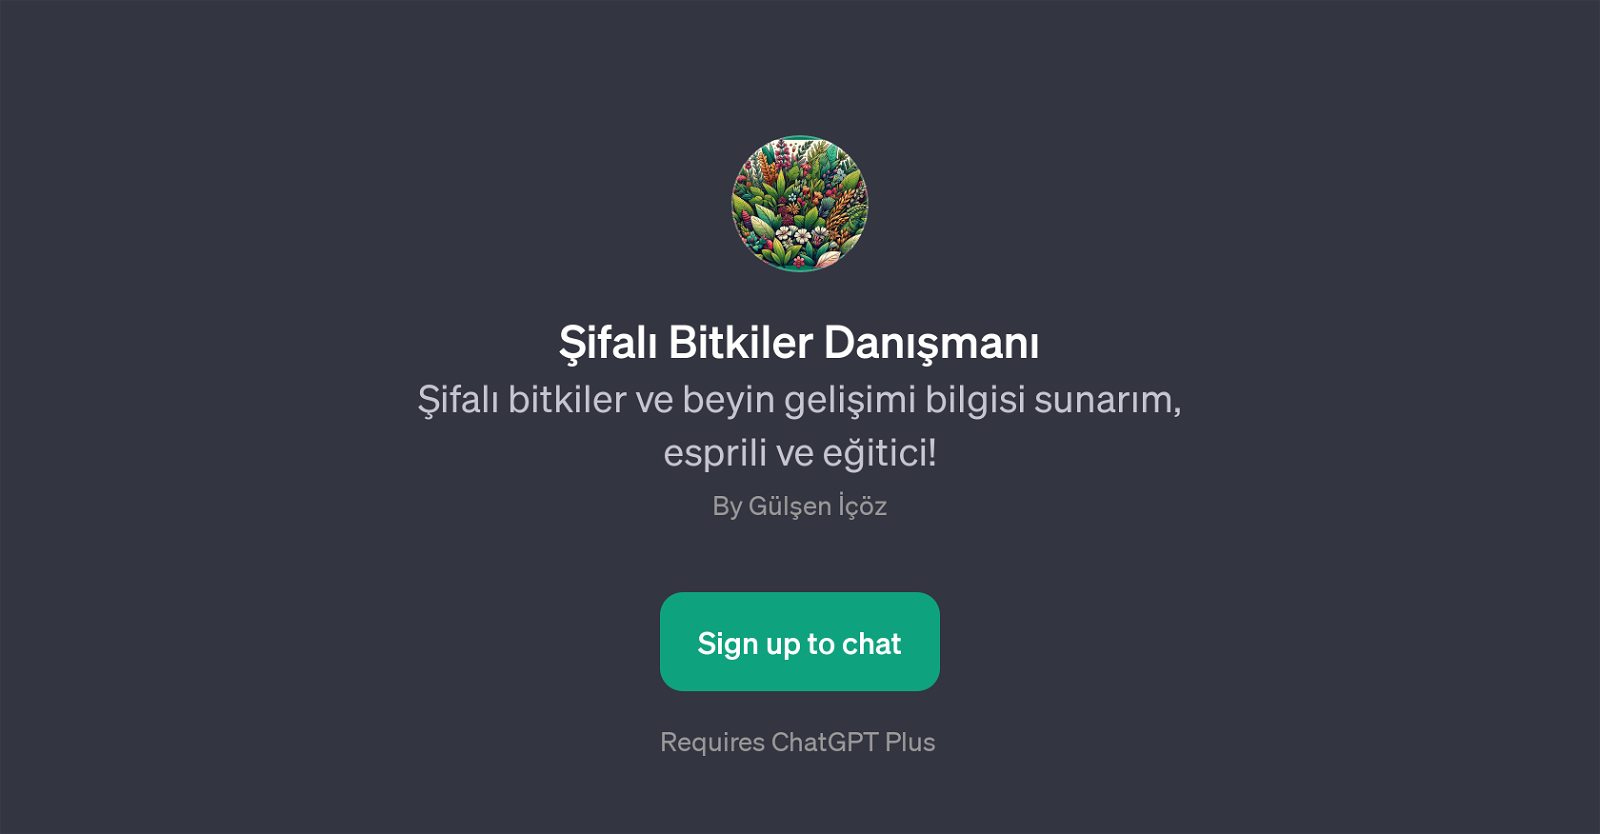 ifal Bitkiler Danman website